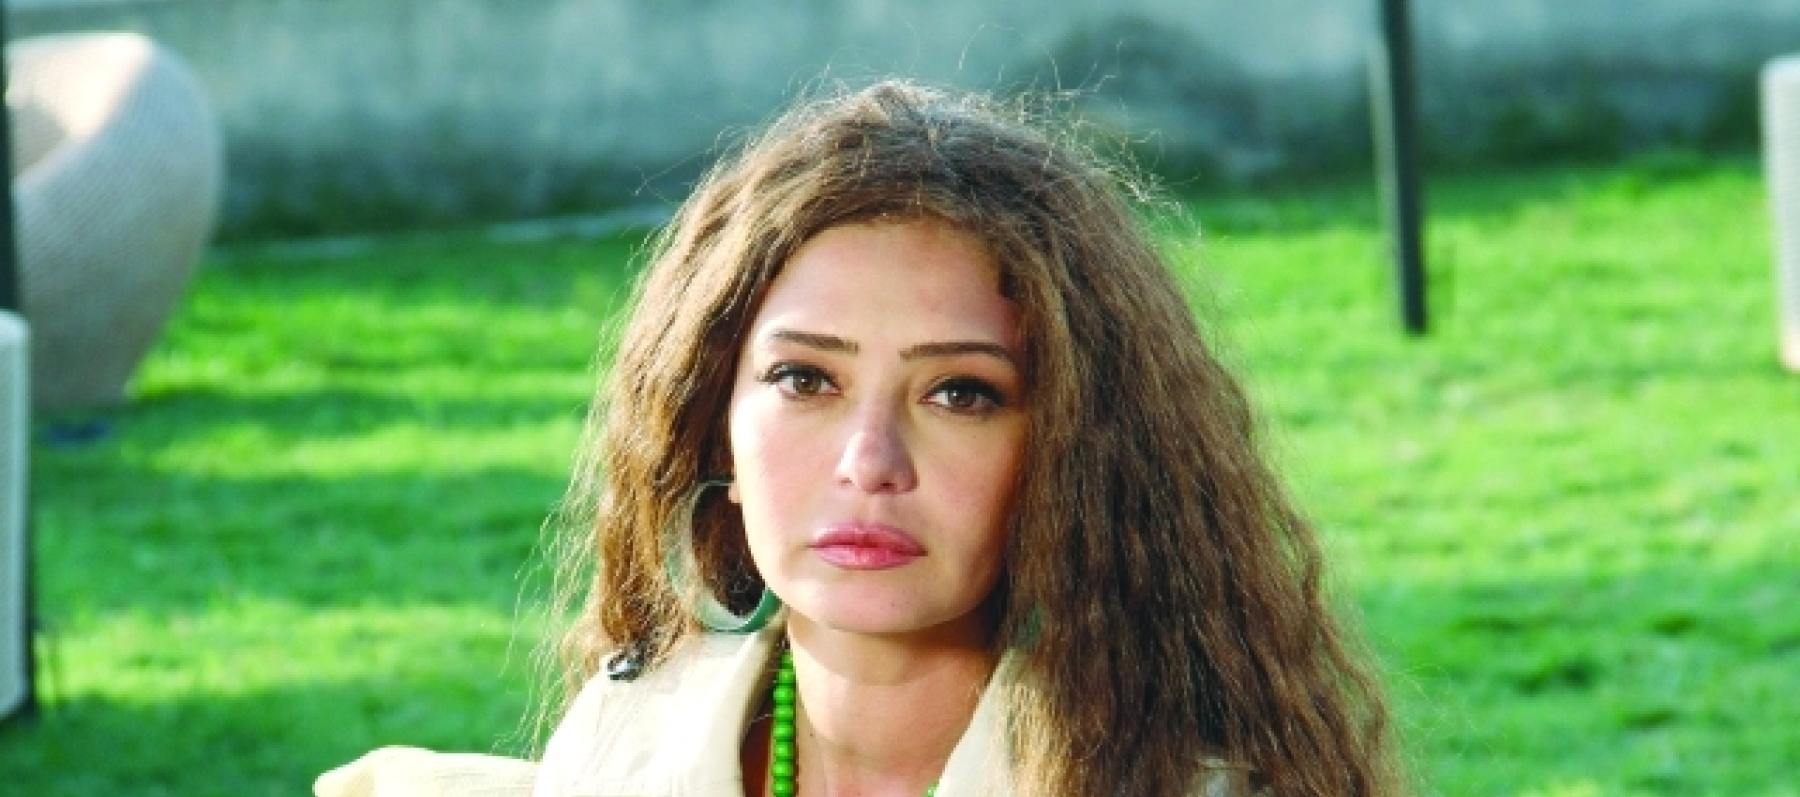 تصدر إسم الراحلة ميرنا المهندس الترند بعد ظهور شبيهتها في مهرجان القاهرة